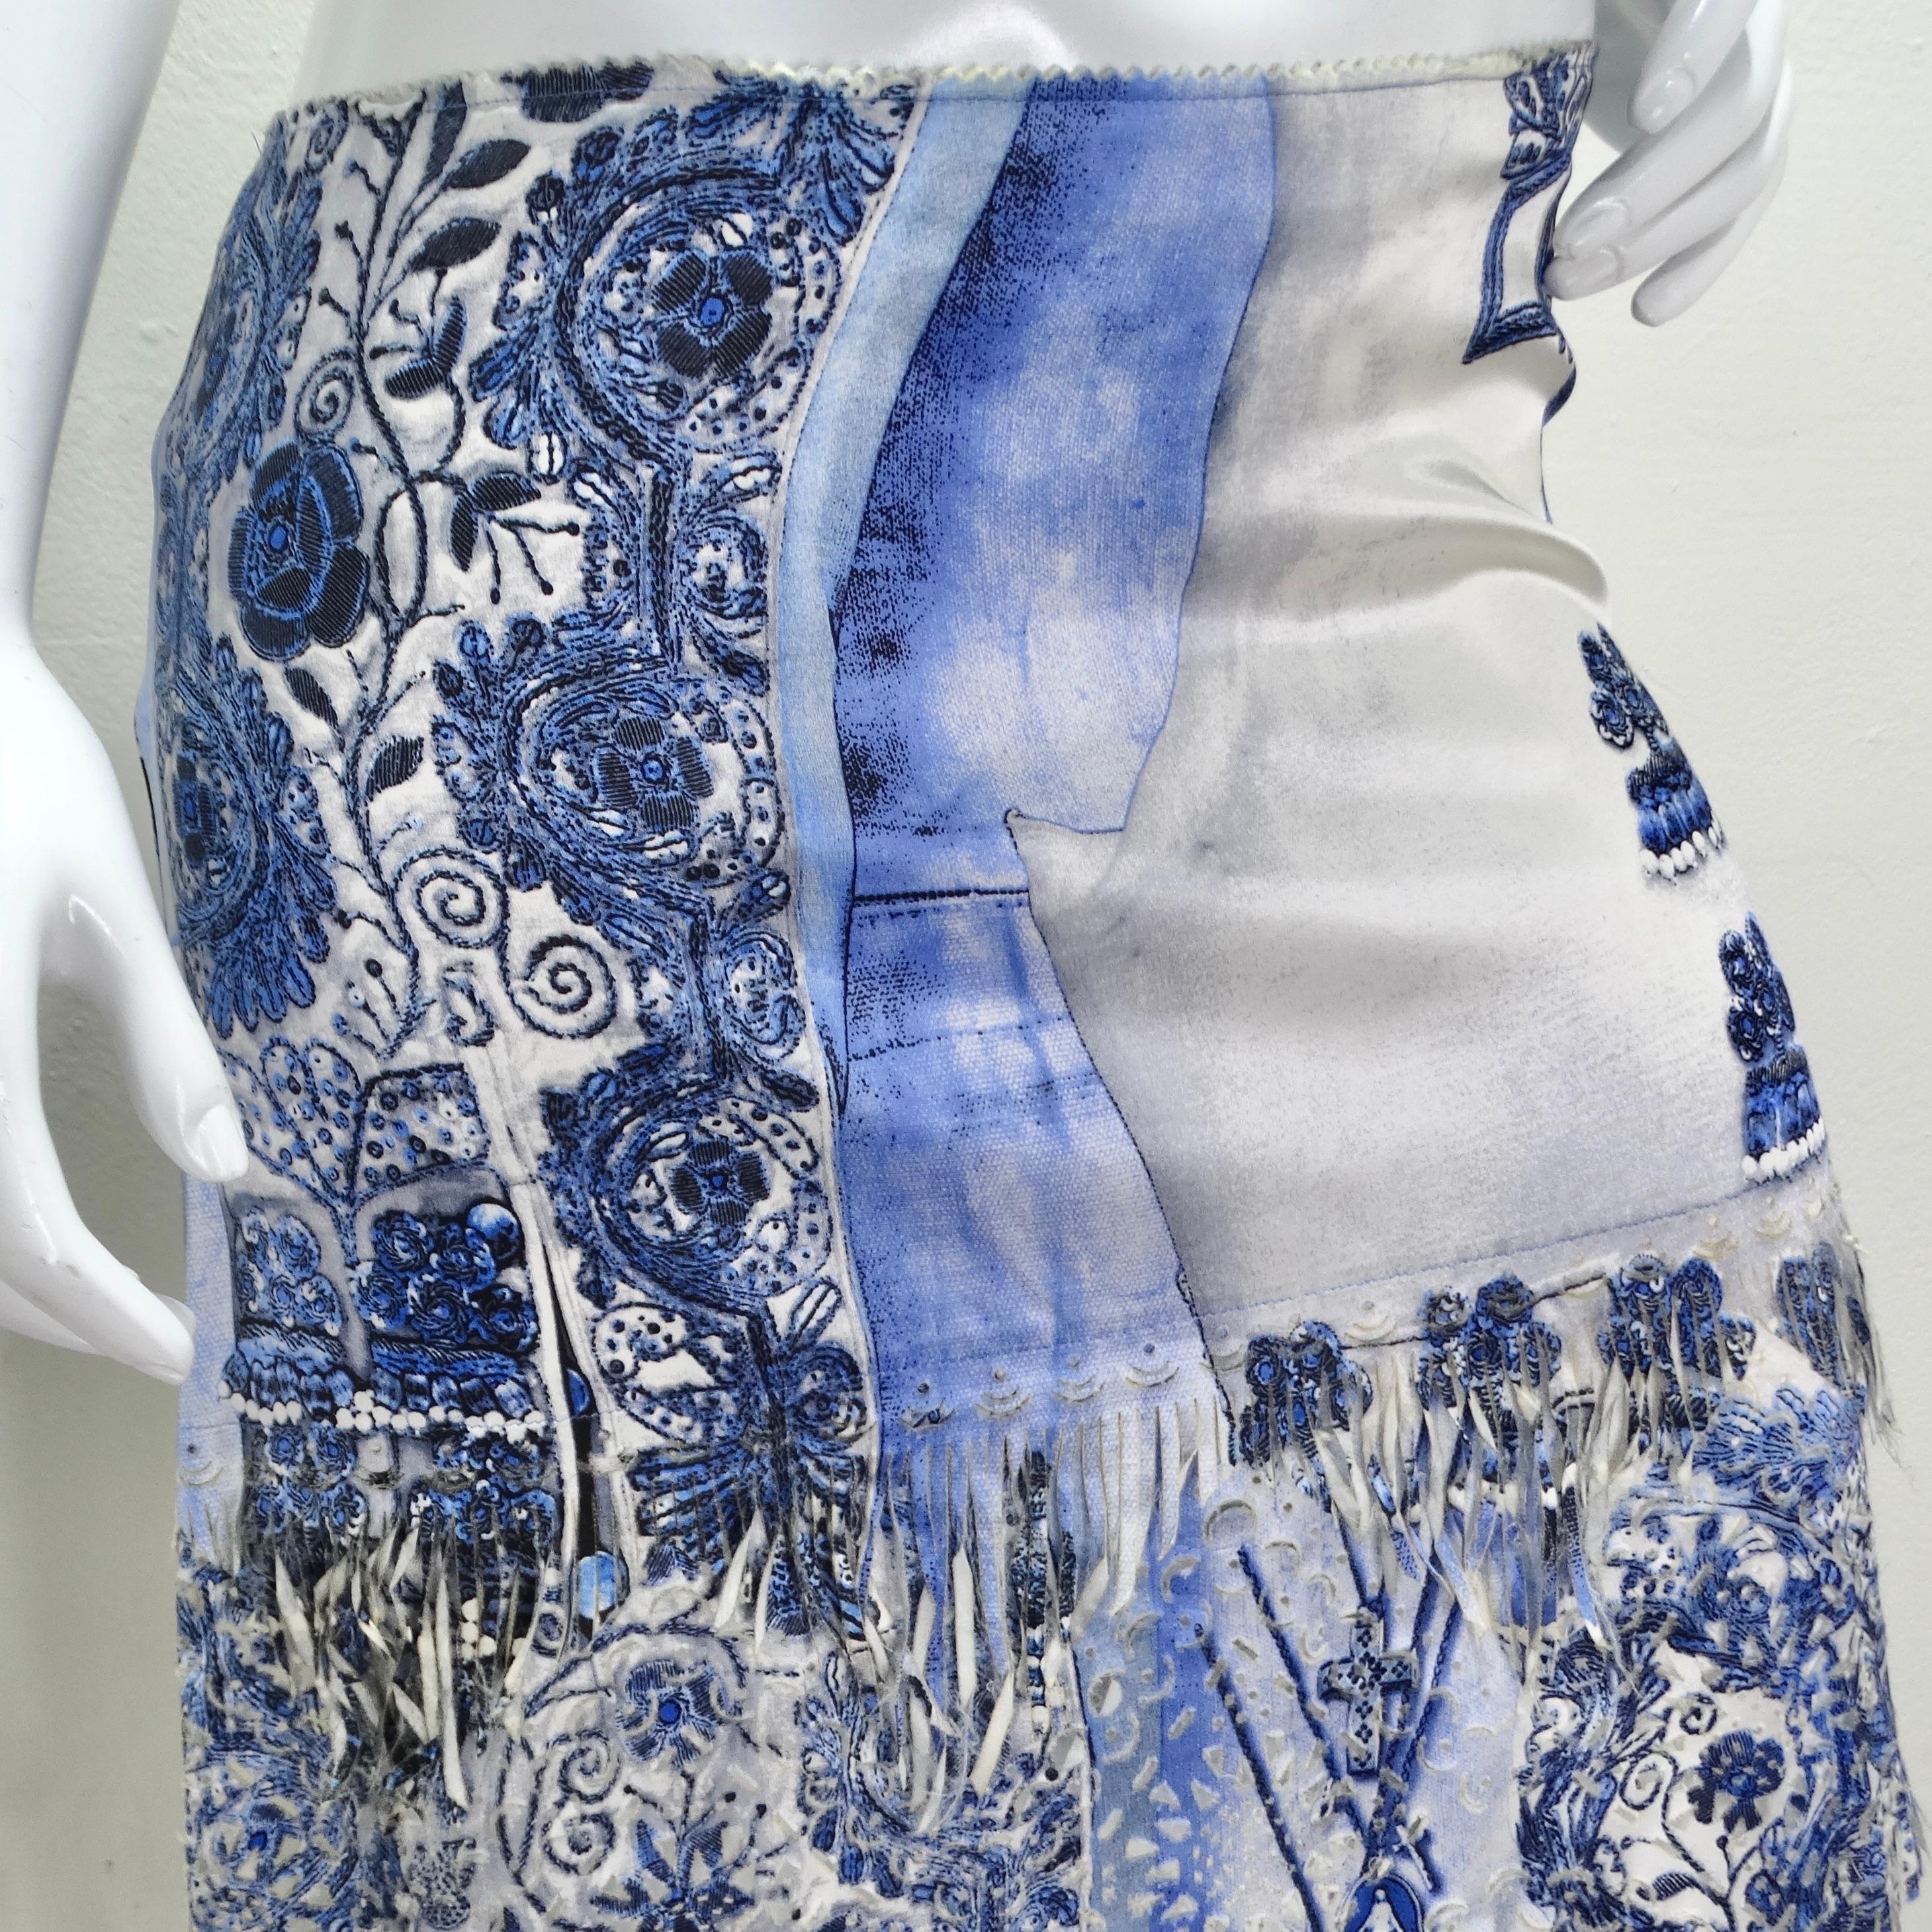 Betreten Sie das Reich der Avantgarde-Mode mit dem Jean Paul Gaultier Femme Embroidered Fringe Skirt, einem fesselnden Stück, das die kühne Kreativität der frühen 2000er Jahre verkörpert. Dieser einzigartige Rock ist mit einem unverwechselbaren